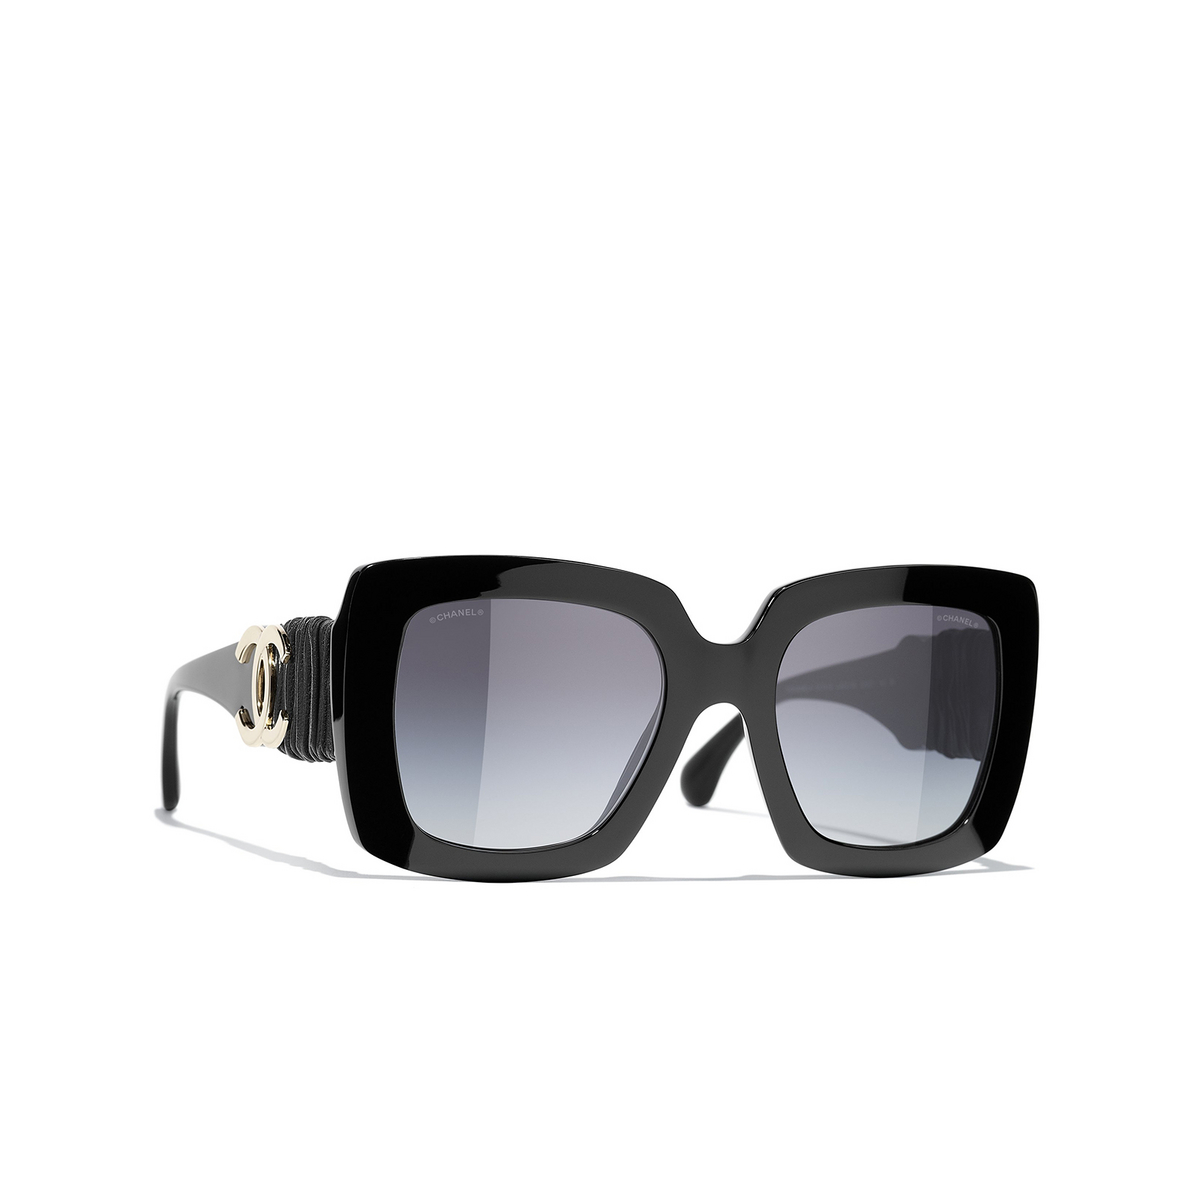 CHANEL square Sunglasses C622S6 Black